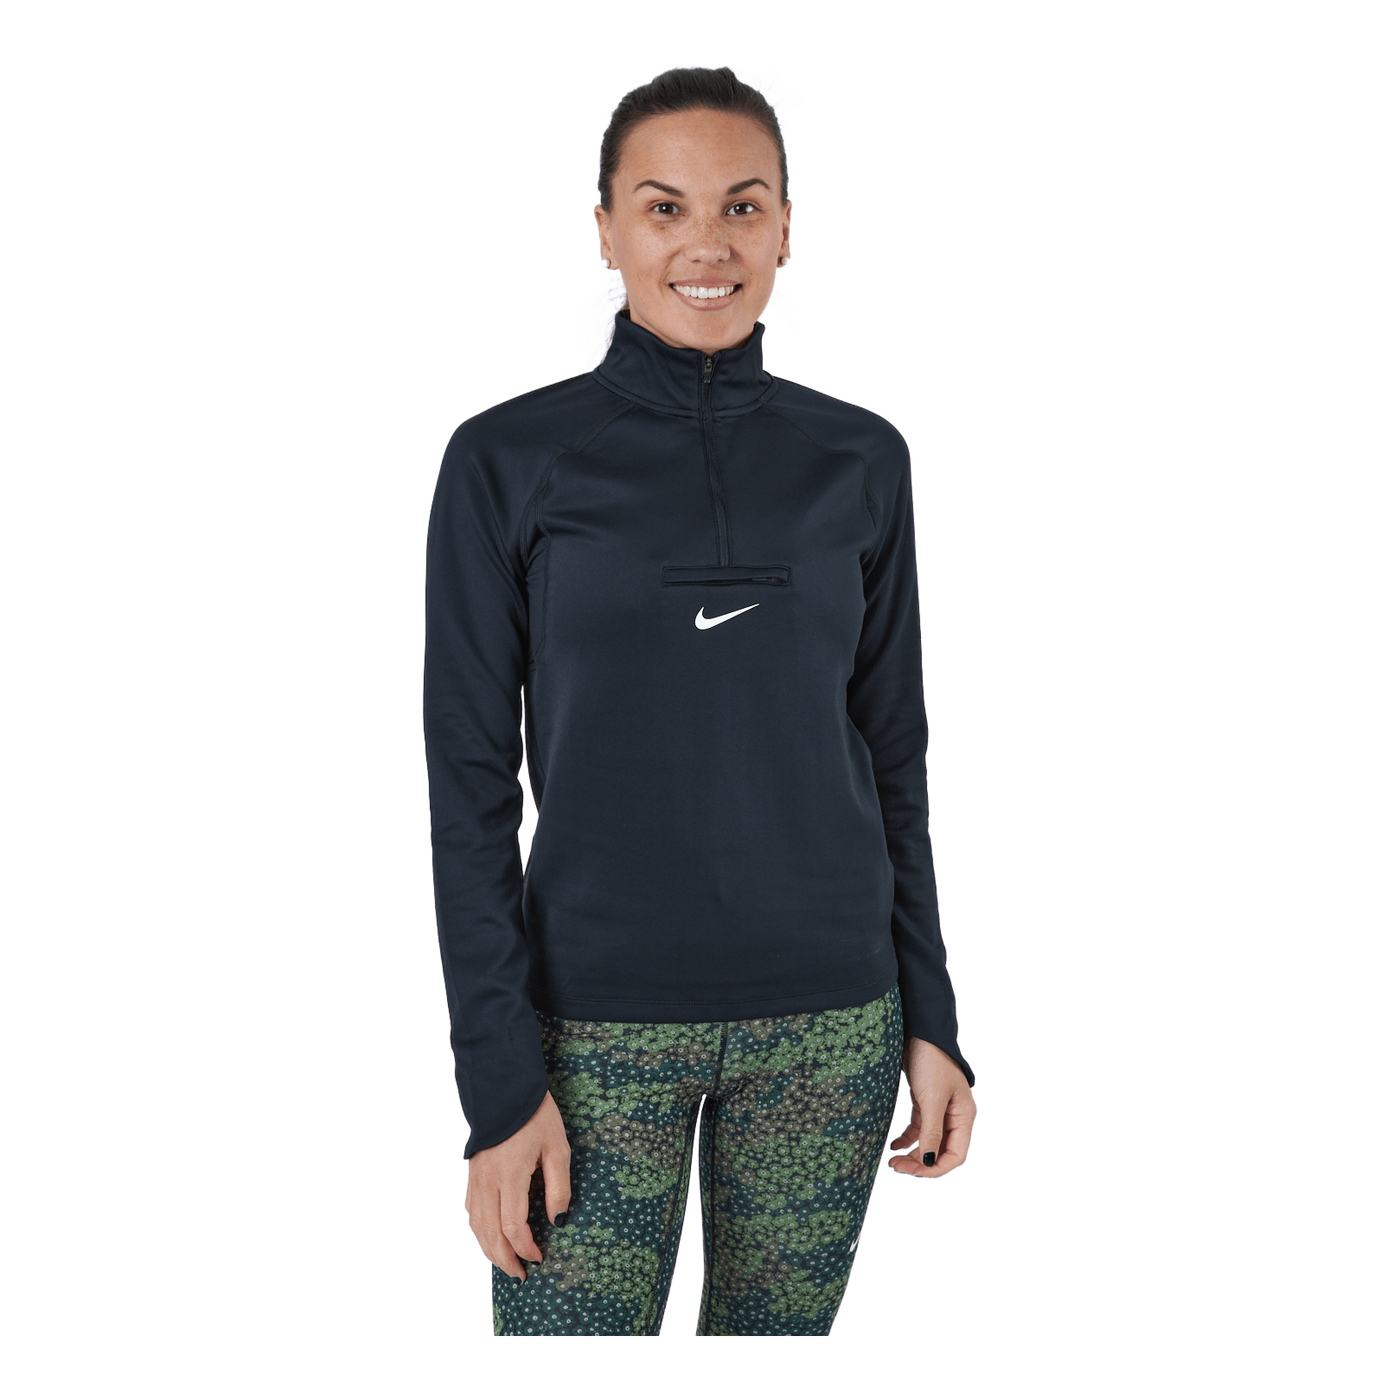 Nike Dri-fit Element Women's T Black/dk Smoke Grey/white